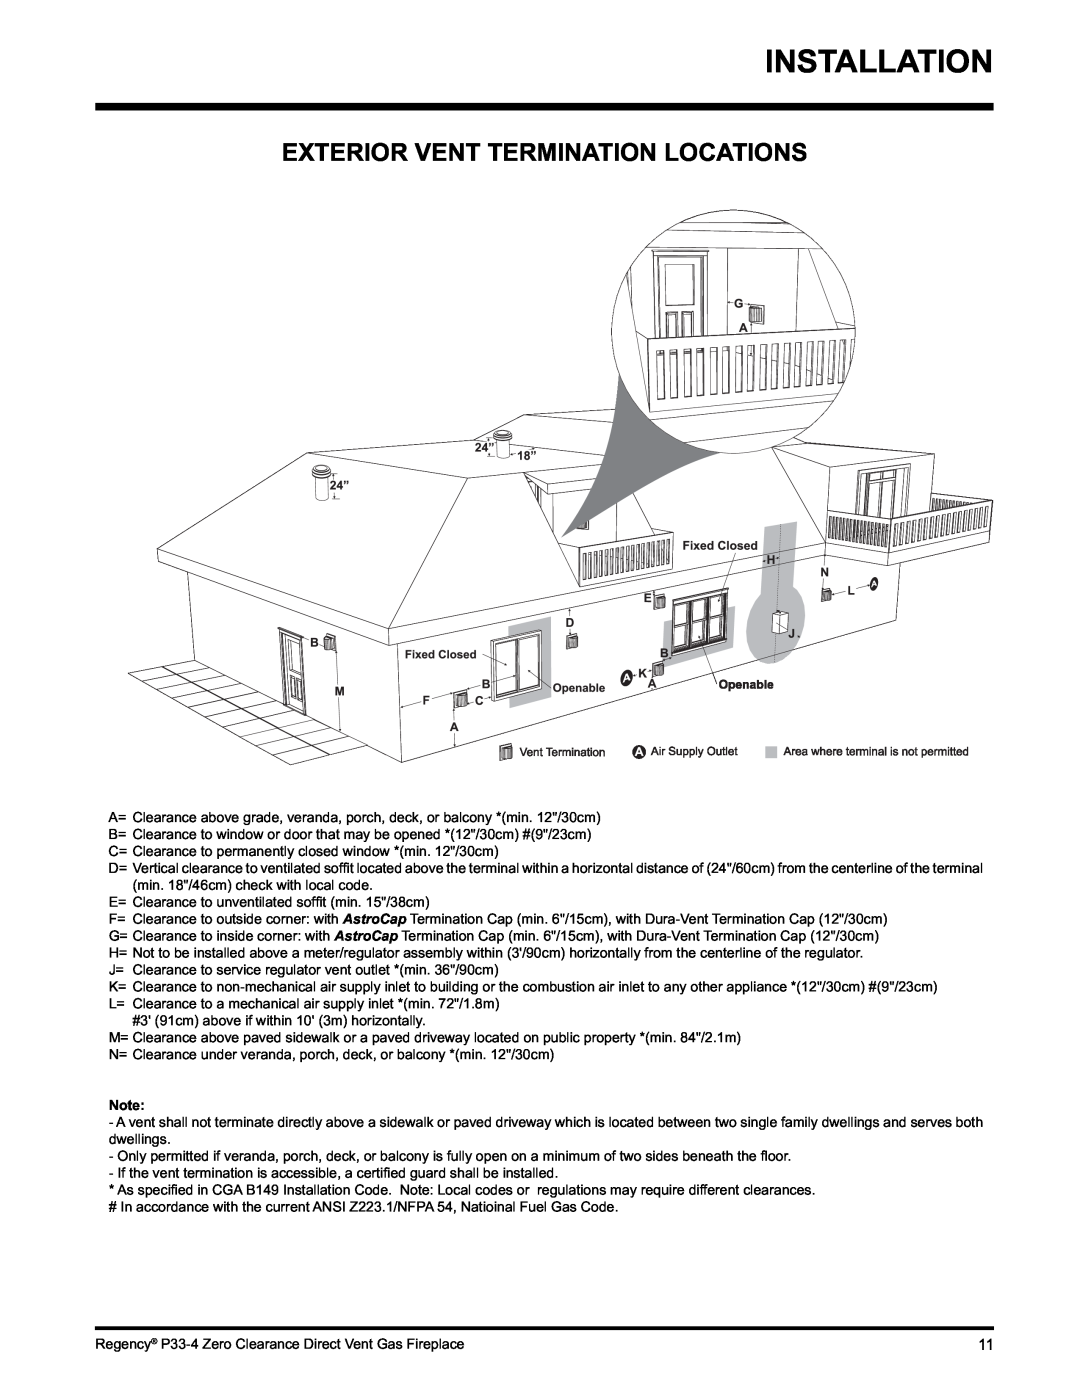 Regency P33-LP4 installation manual Installation, Exterior Vent Termination Locations 